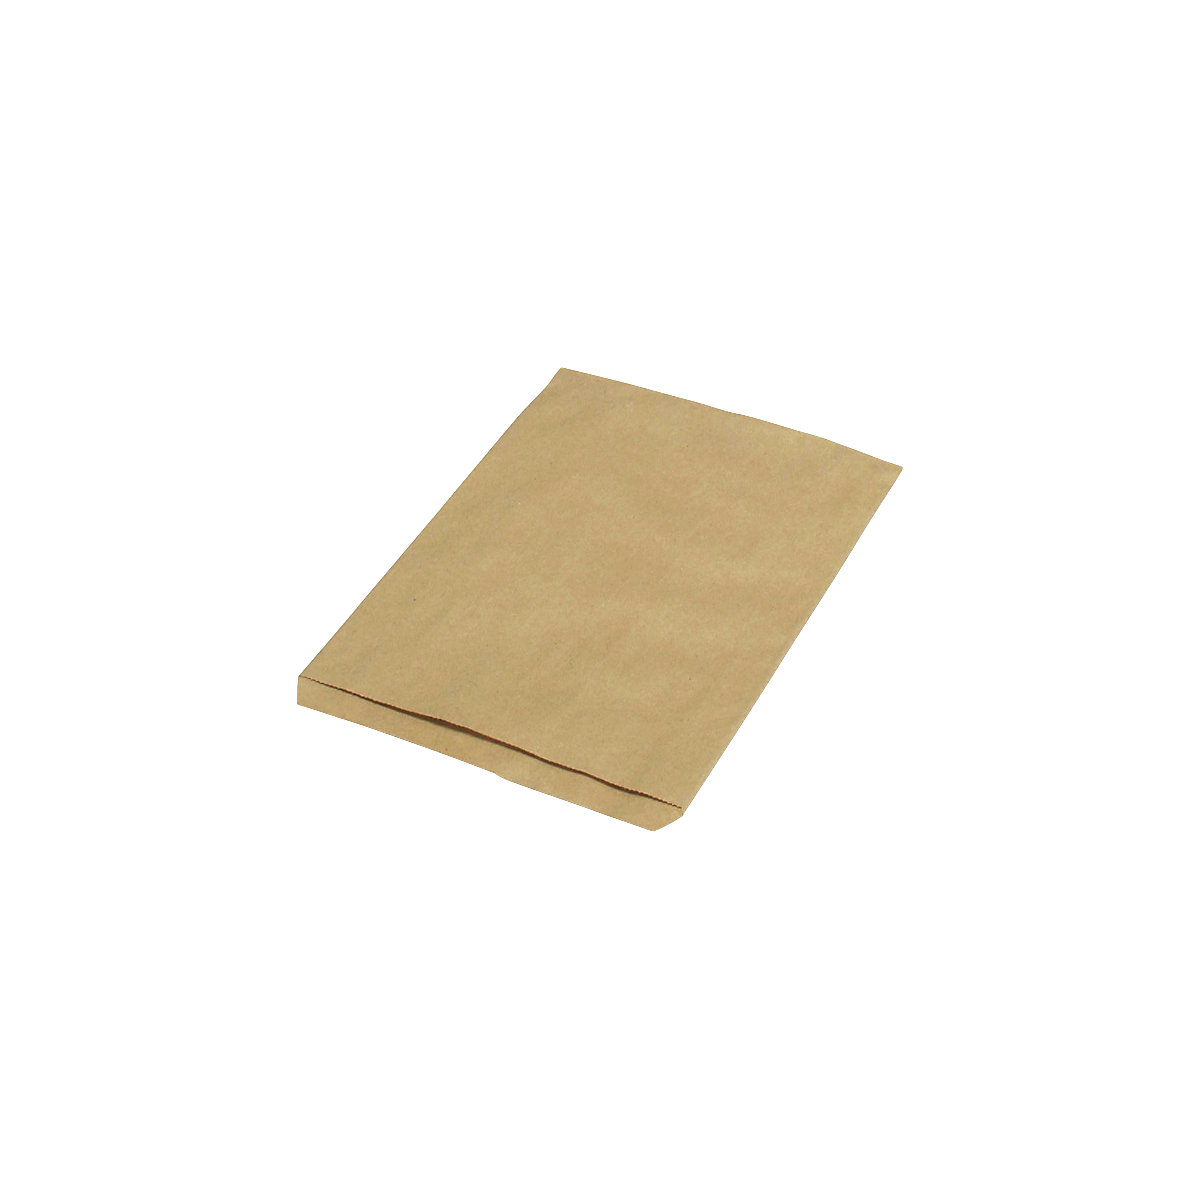 Sacchetti piatti – terra, in carta riciclata, lungh. x largh. 240 x 165 mm, conf. da 1000 pz.-2